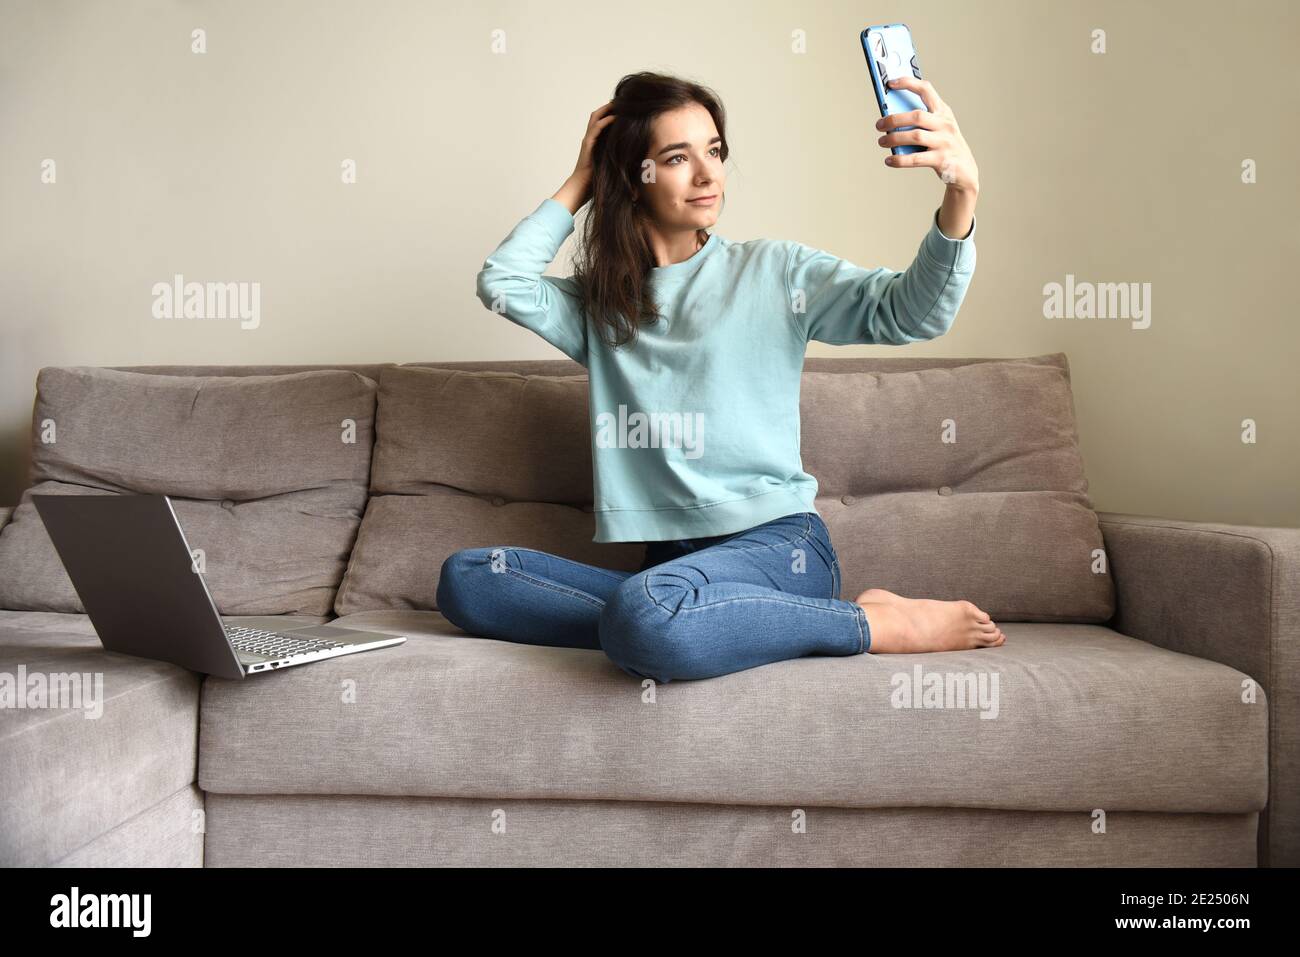 Jeune femme souriante prenant un selfie pour son profil. Elle est assise sur un canapé près d'un ordinateur portable à la maison. Verrouillage et datant en ligne concept Banque D'Images